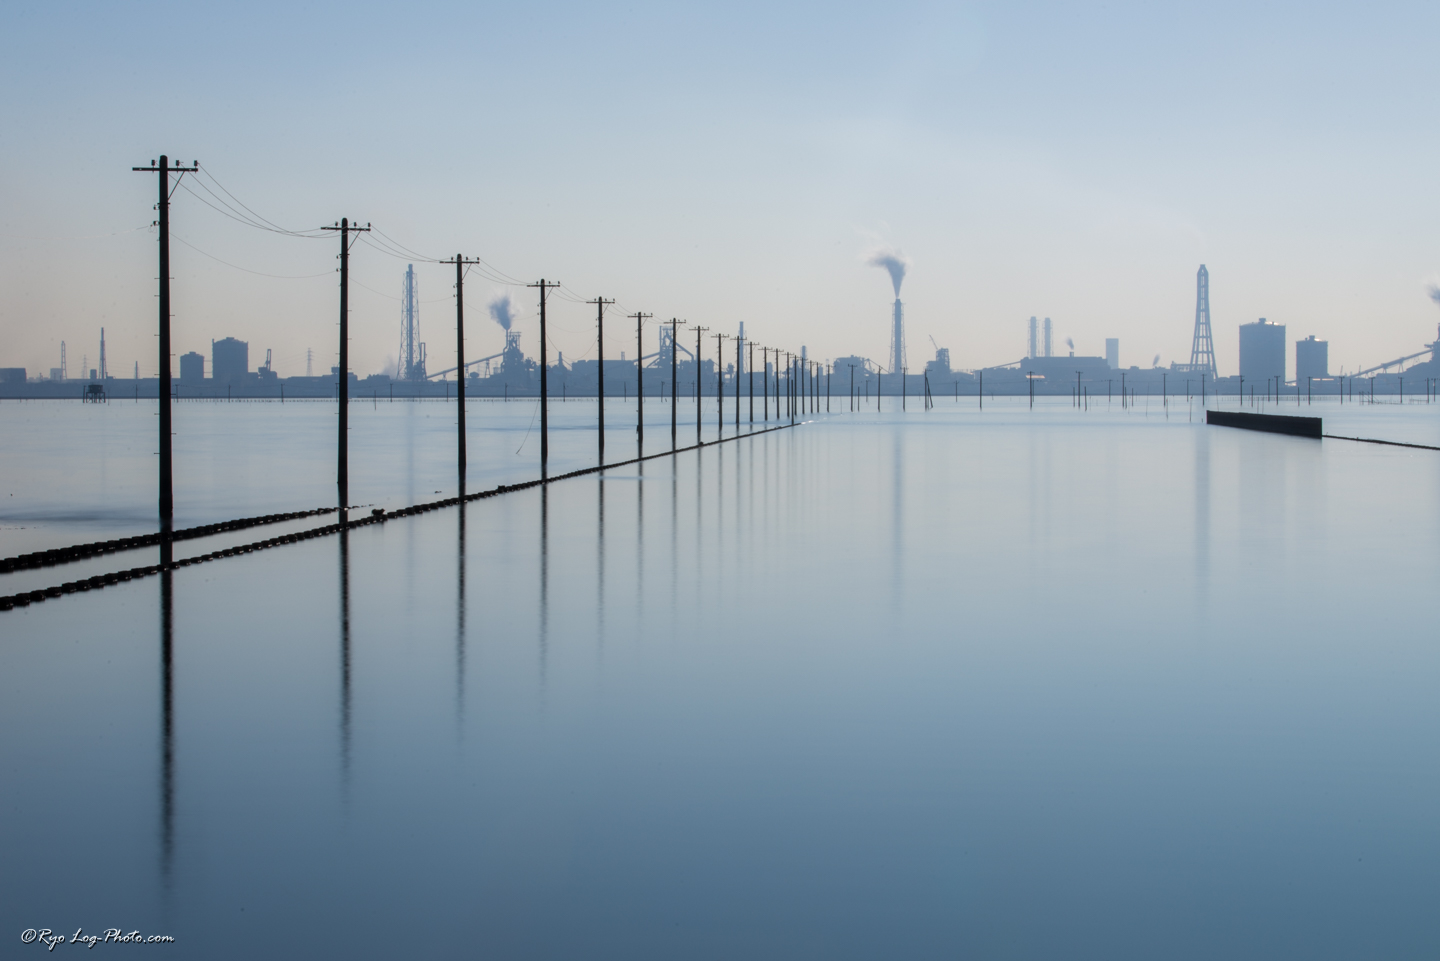 日本のウユニ塩湖と呼ばれる 木更津の江川海岸へ 海に浮かぶ電柱が幻想的 鏡張りの撮影に成功 Log Photo